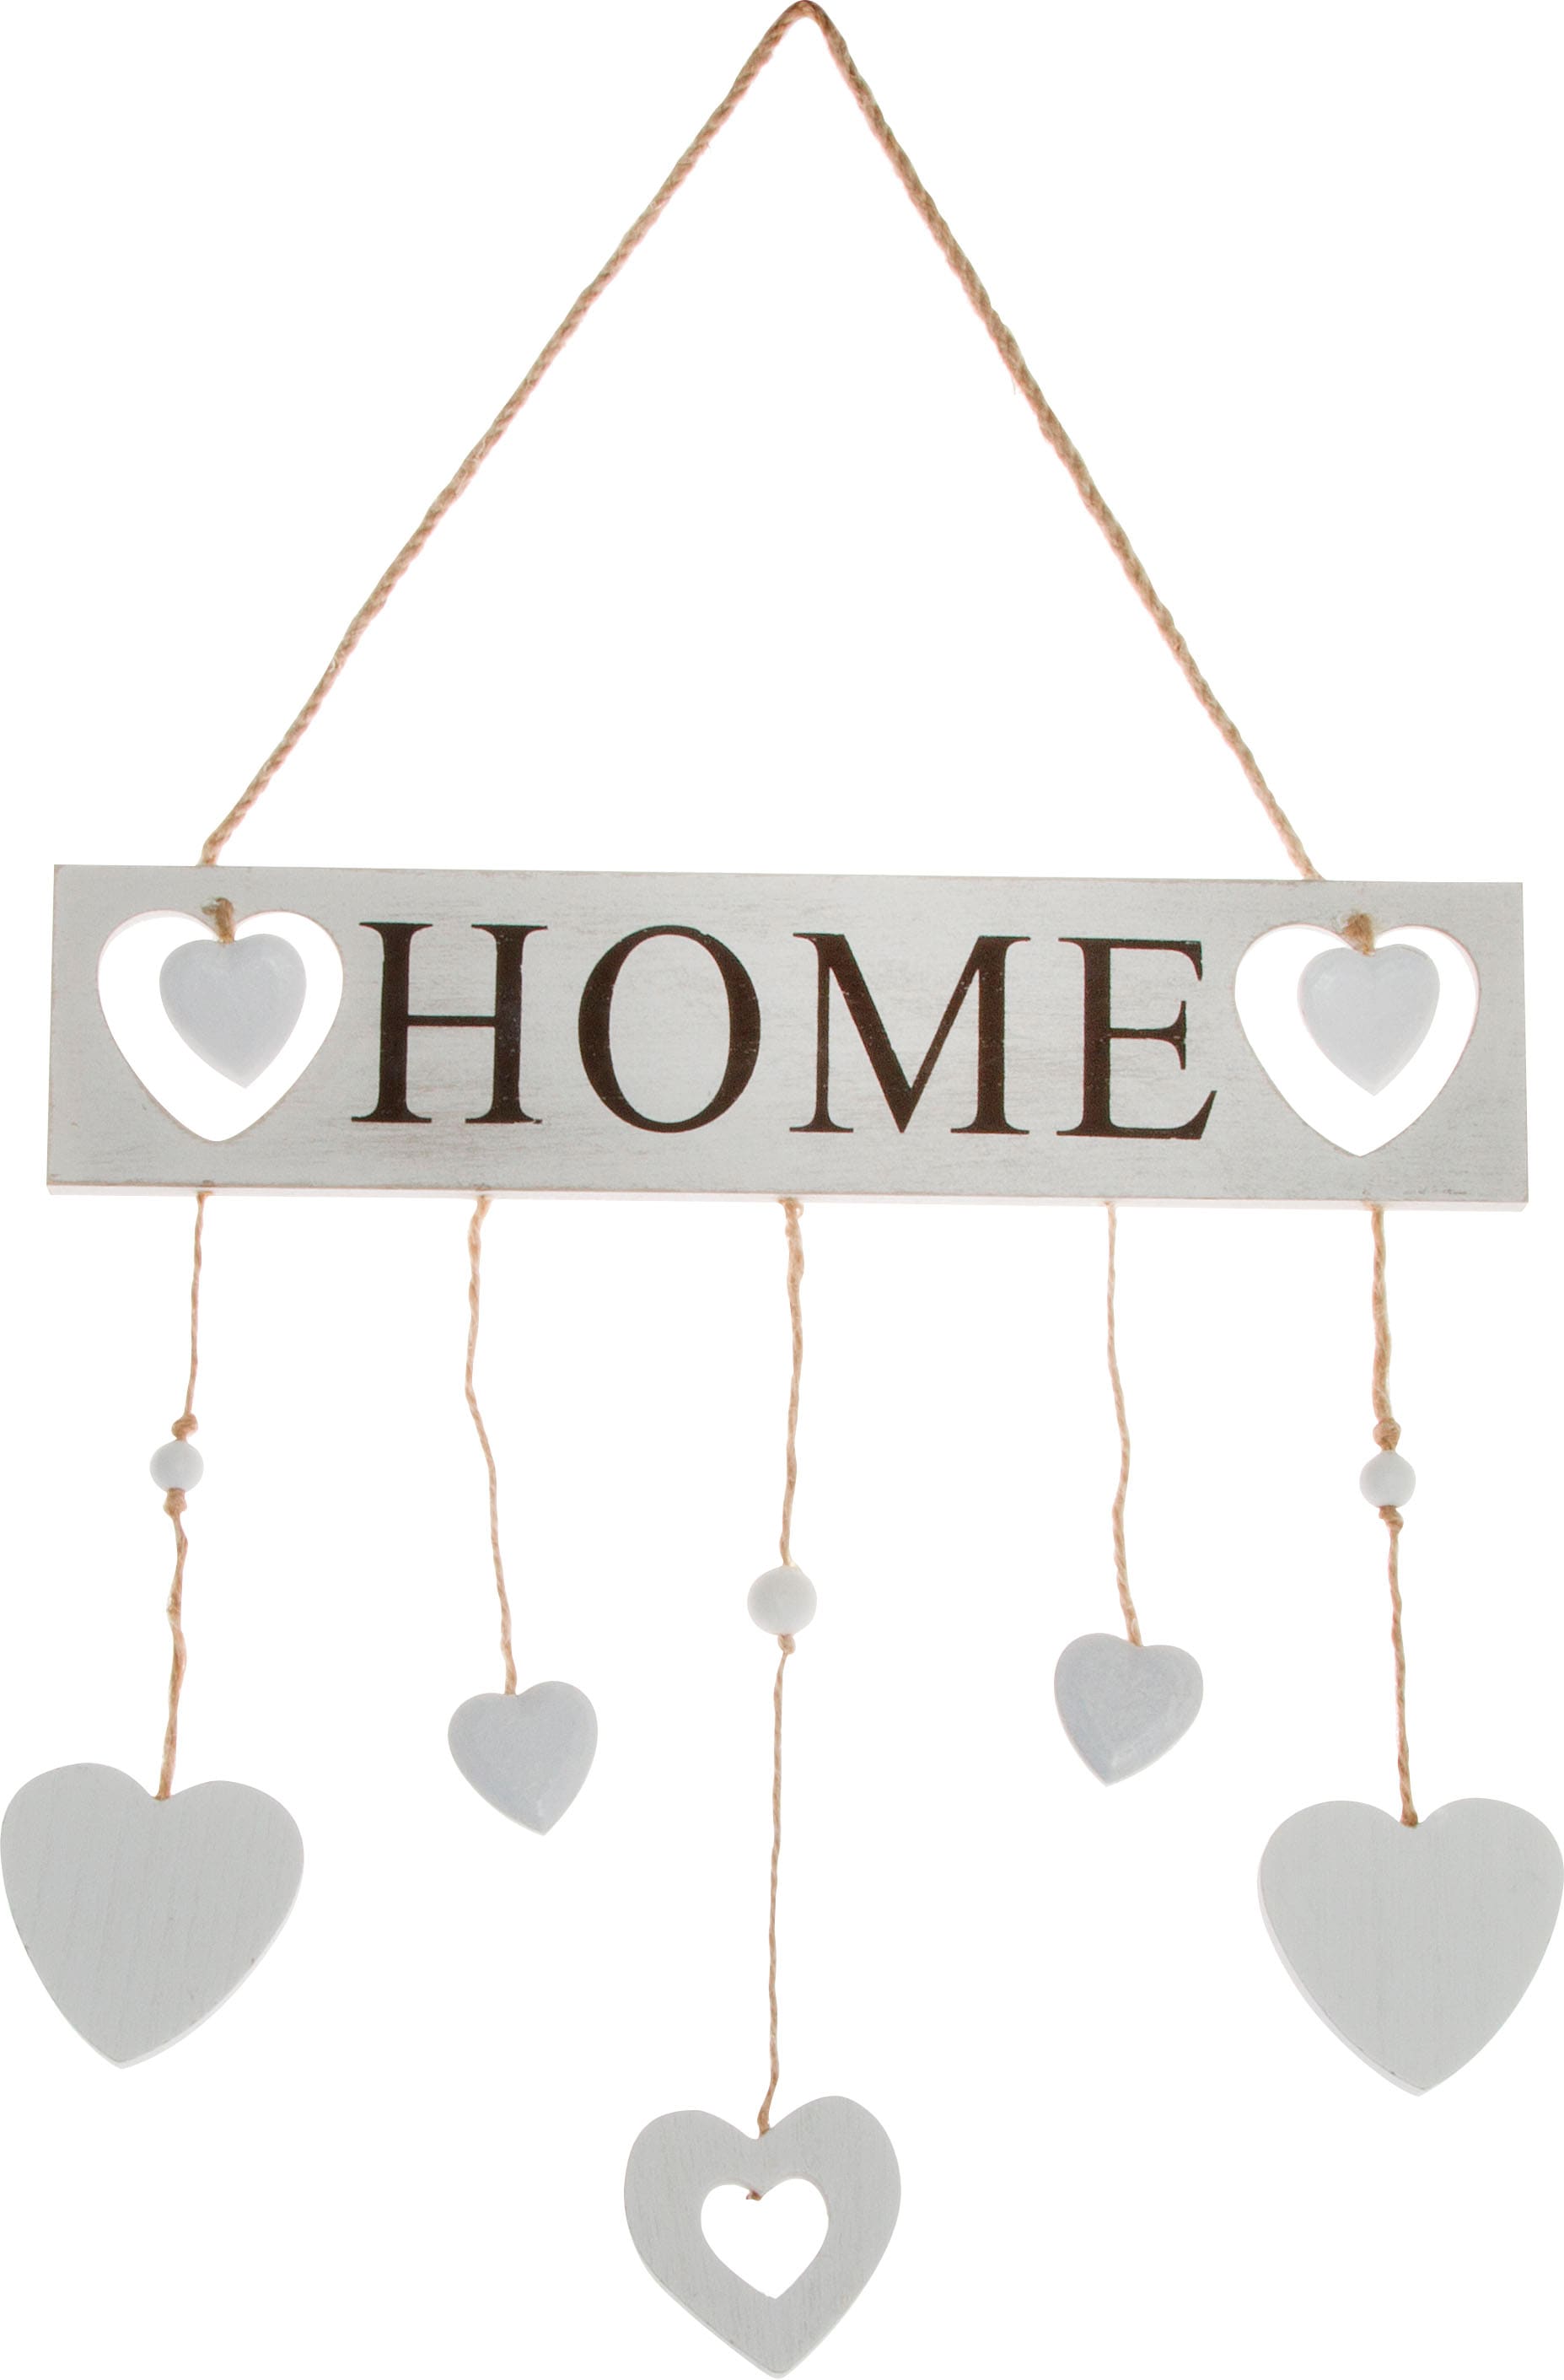 Myflair Möbel mit Wohnzimmer & Wanddeko kaufen »Home«, Deko-Buchstaben Schriftug & Herzen, Accessoires